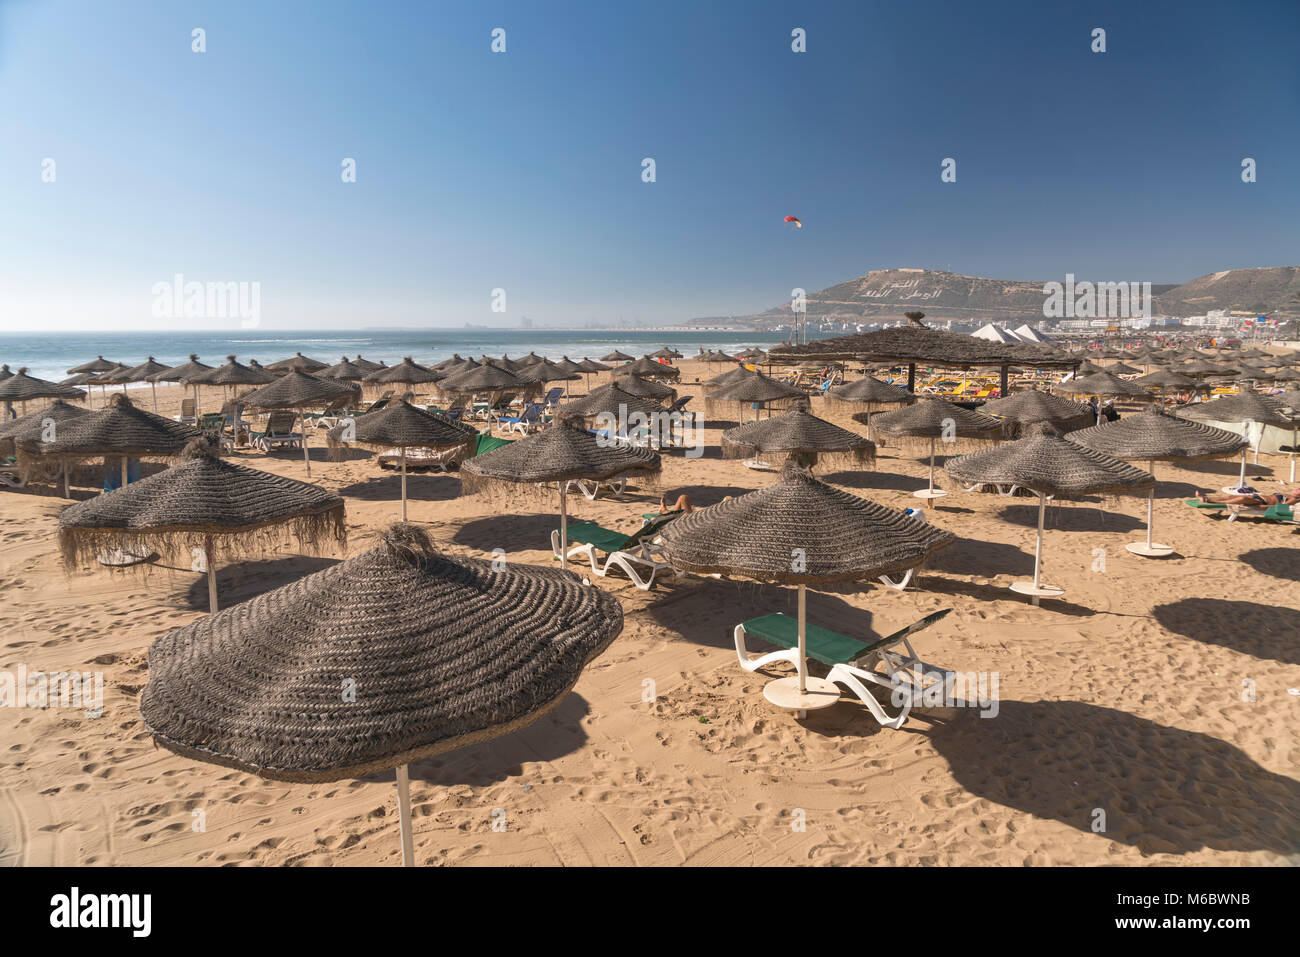 Sonnenschirme am Strand in Agadir, Königreich Marokko, Afrika | Sonnenschirme am Strand in Agadir, Königreich Marokko, Afrika Stockfoto